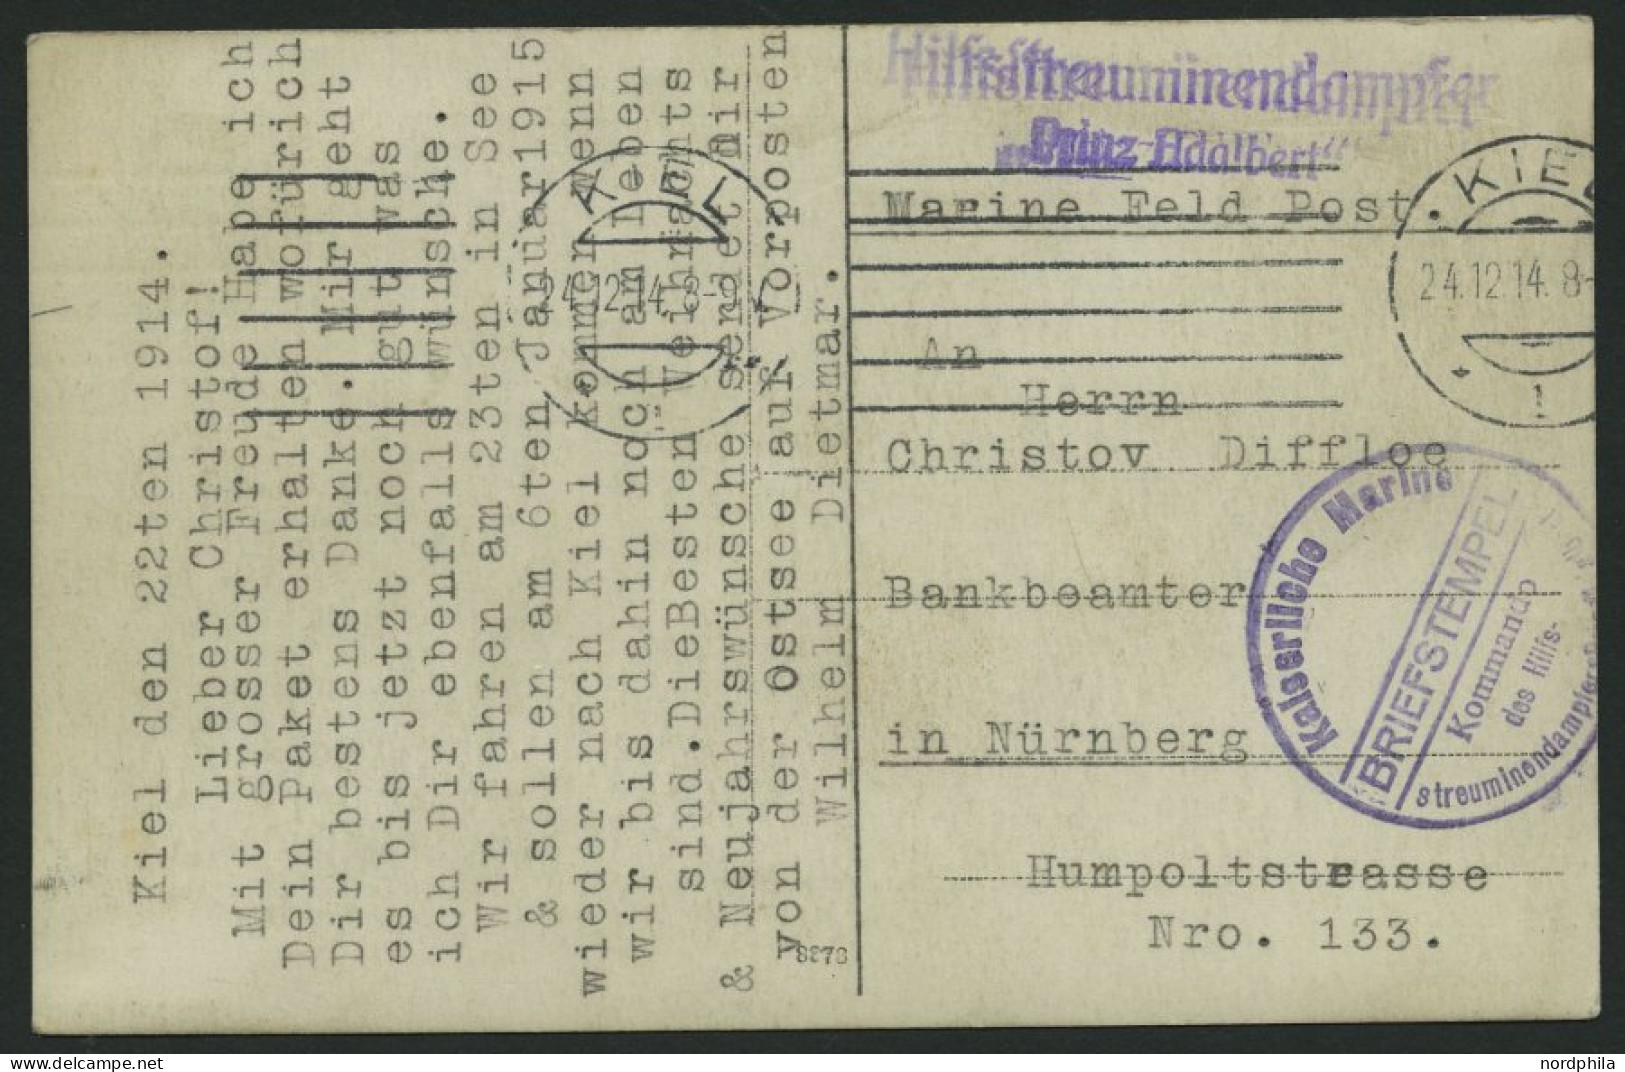 MSP VON 1914 - 1918 (Hilfsstreuminendampfer PRINZ ADALBERT), 22.12.1914, Violetter Briefstempel, Feldpost-Ansichtskarte  - Schiffahrt